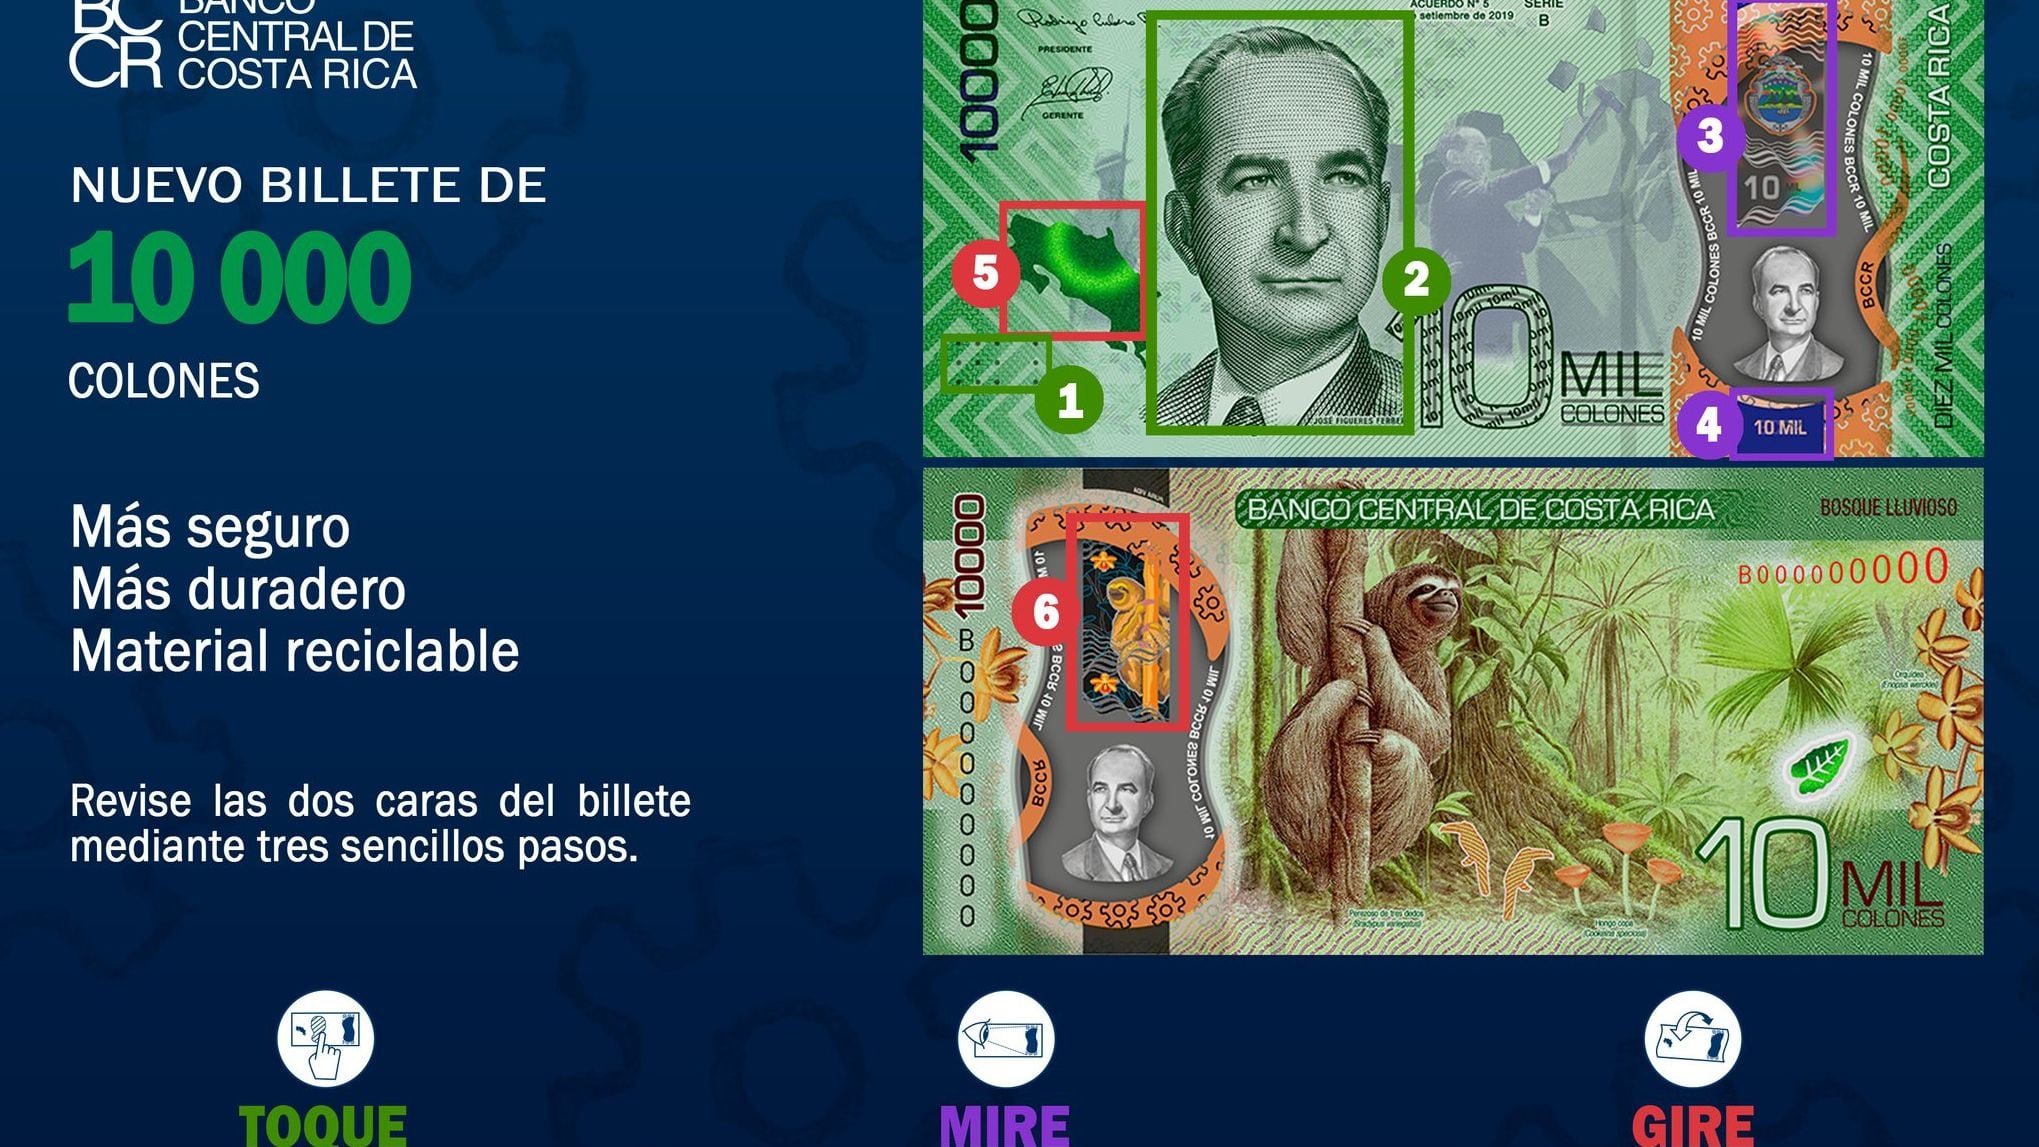 Cómo identificar billetes falsos? 